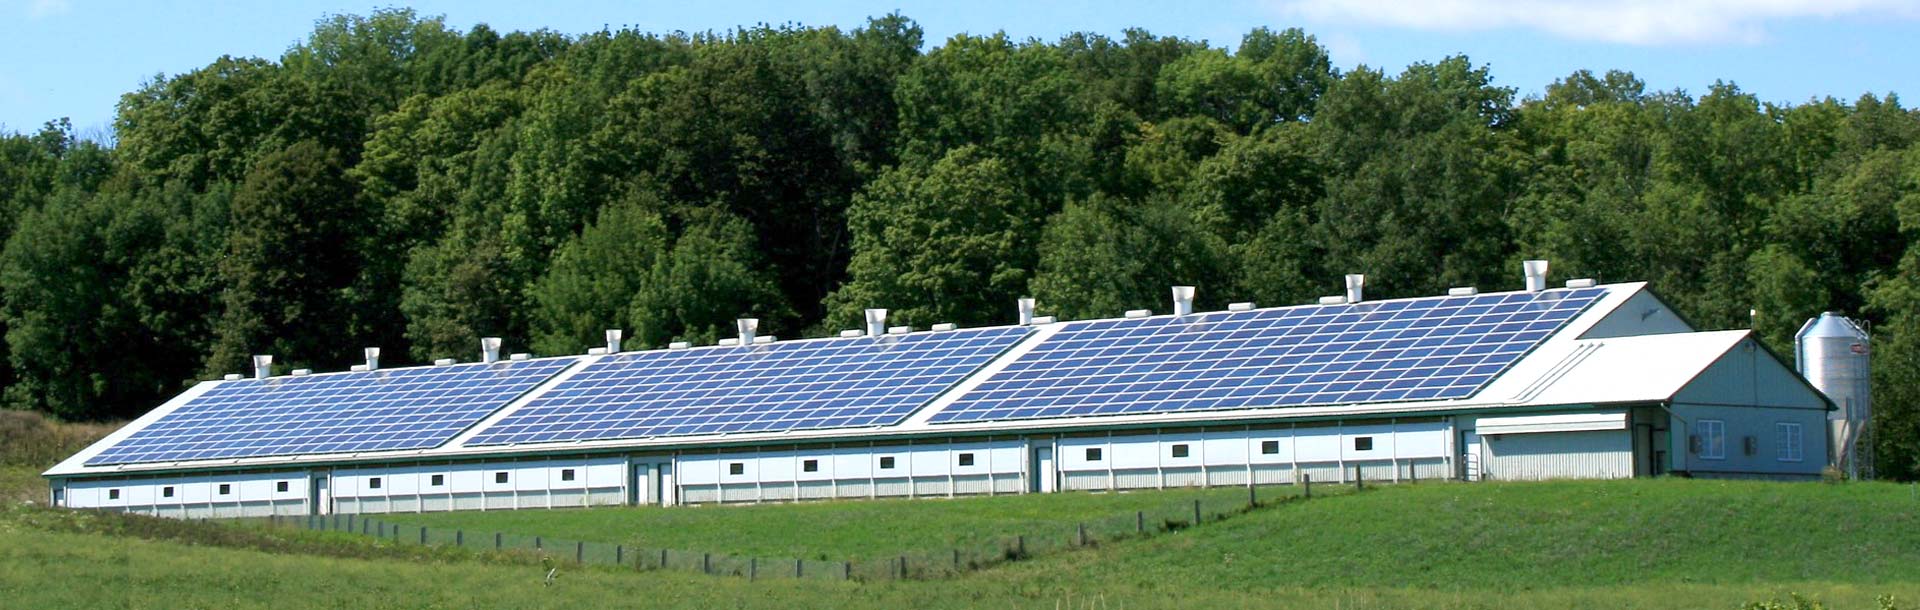 Techo solar en una granja de pollos